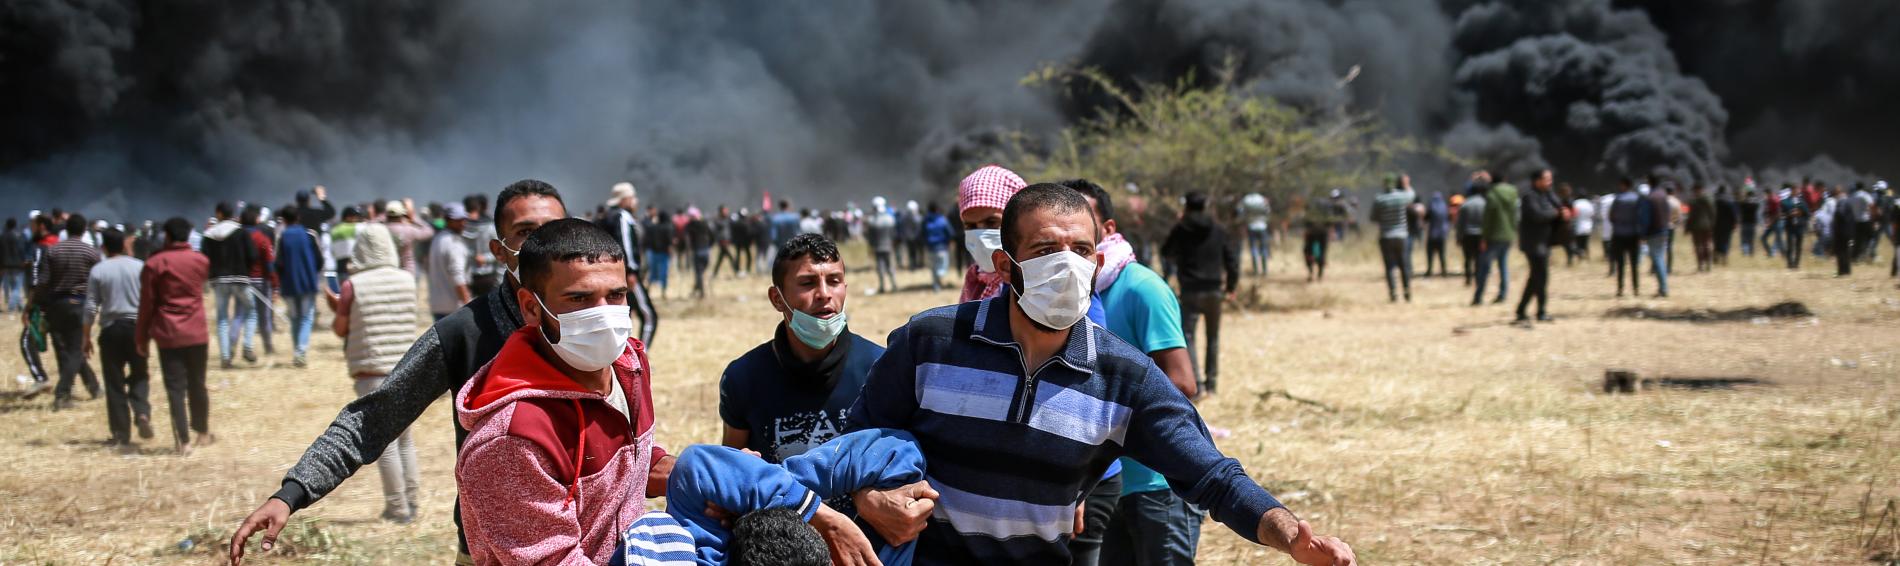 Verletzter bei Protesten in Gaza 